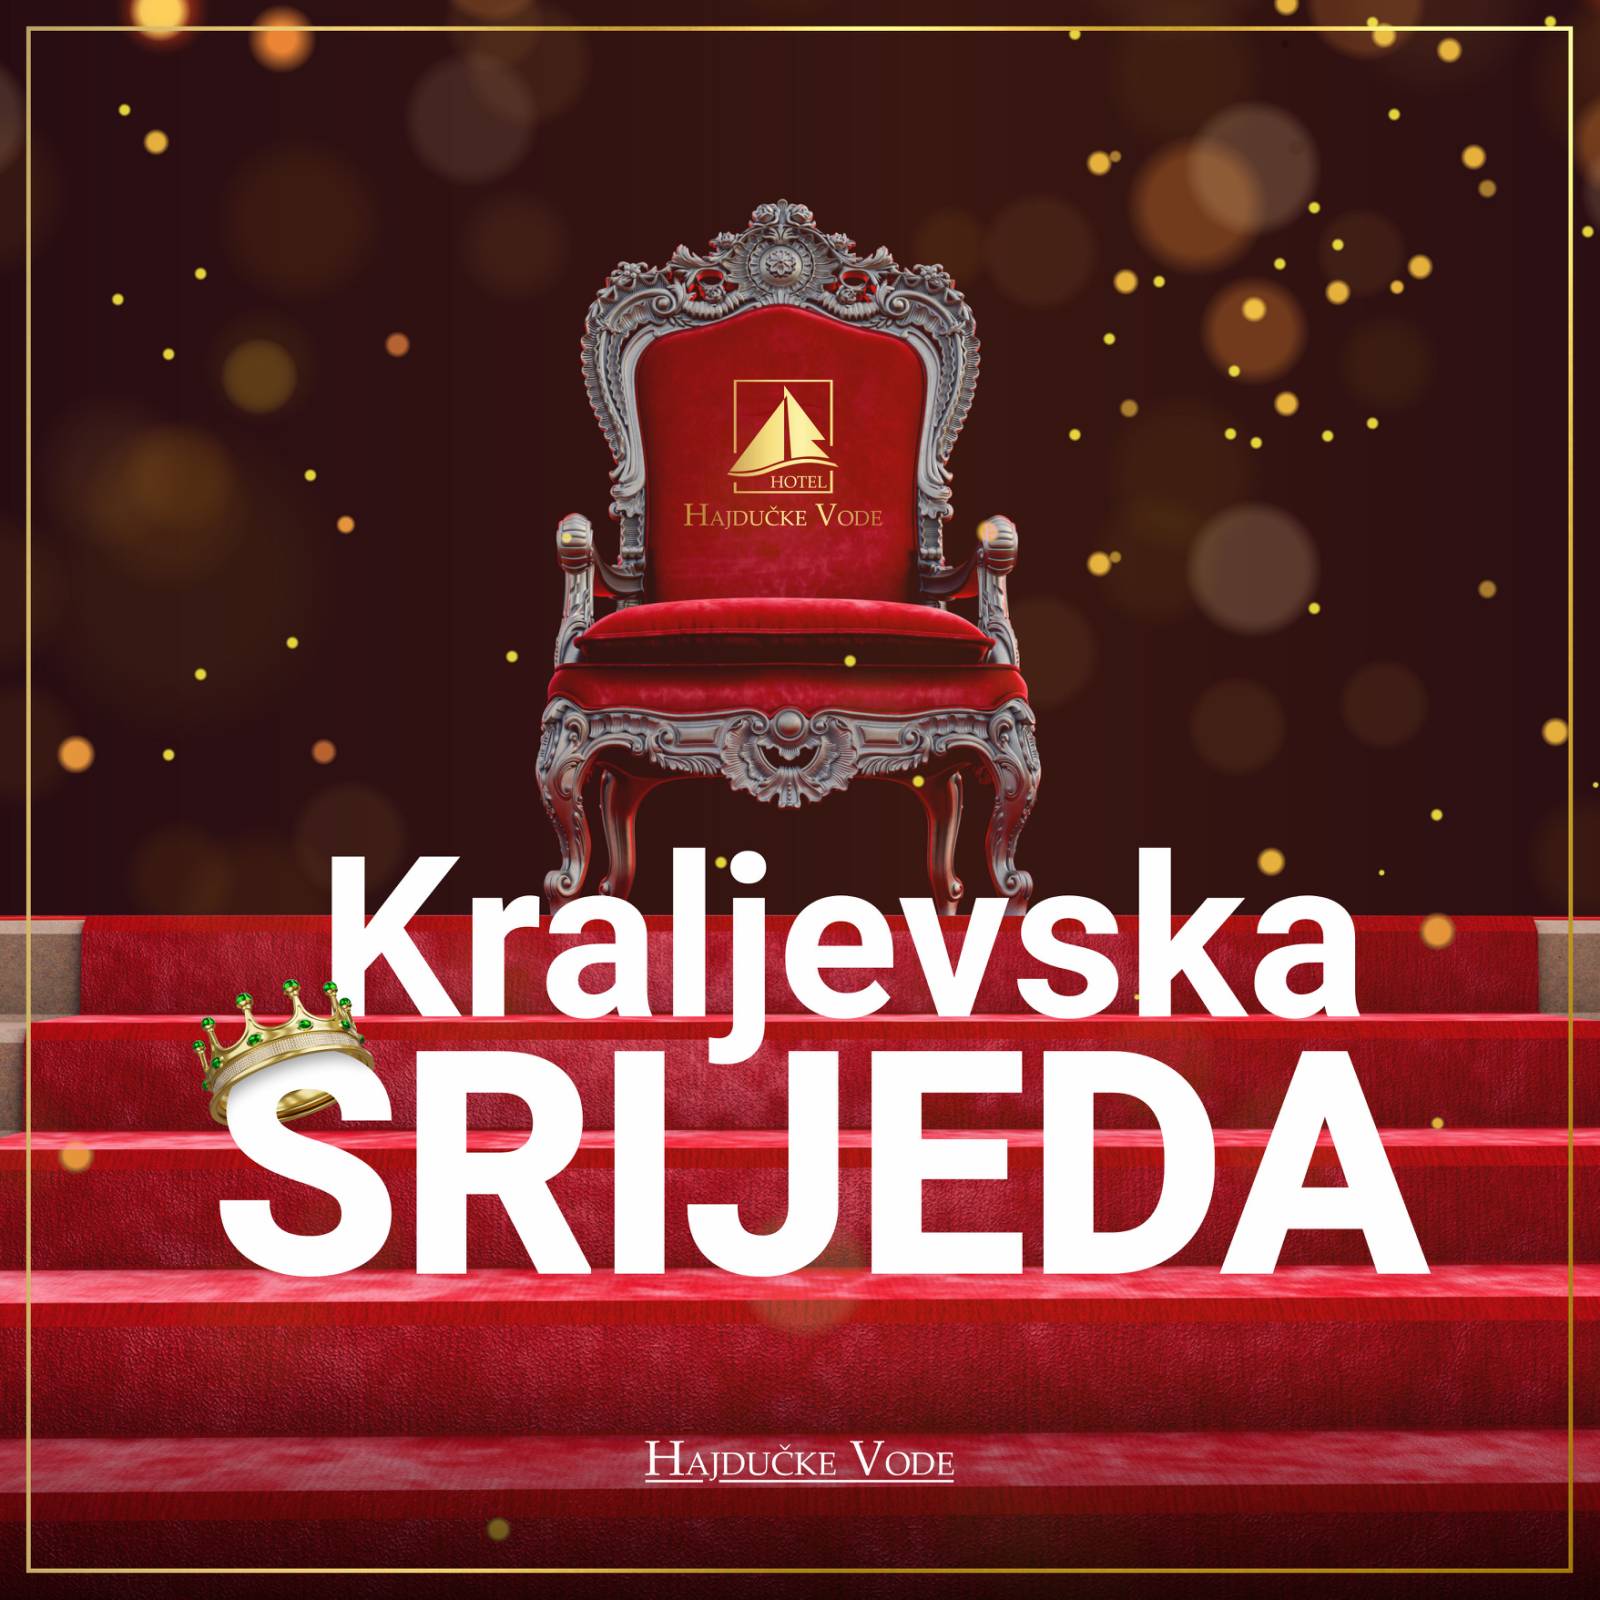 You are currently viewing KRALJEVSKA SRIJEDA – Kraljevske porcije u pola cijene